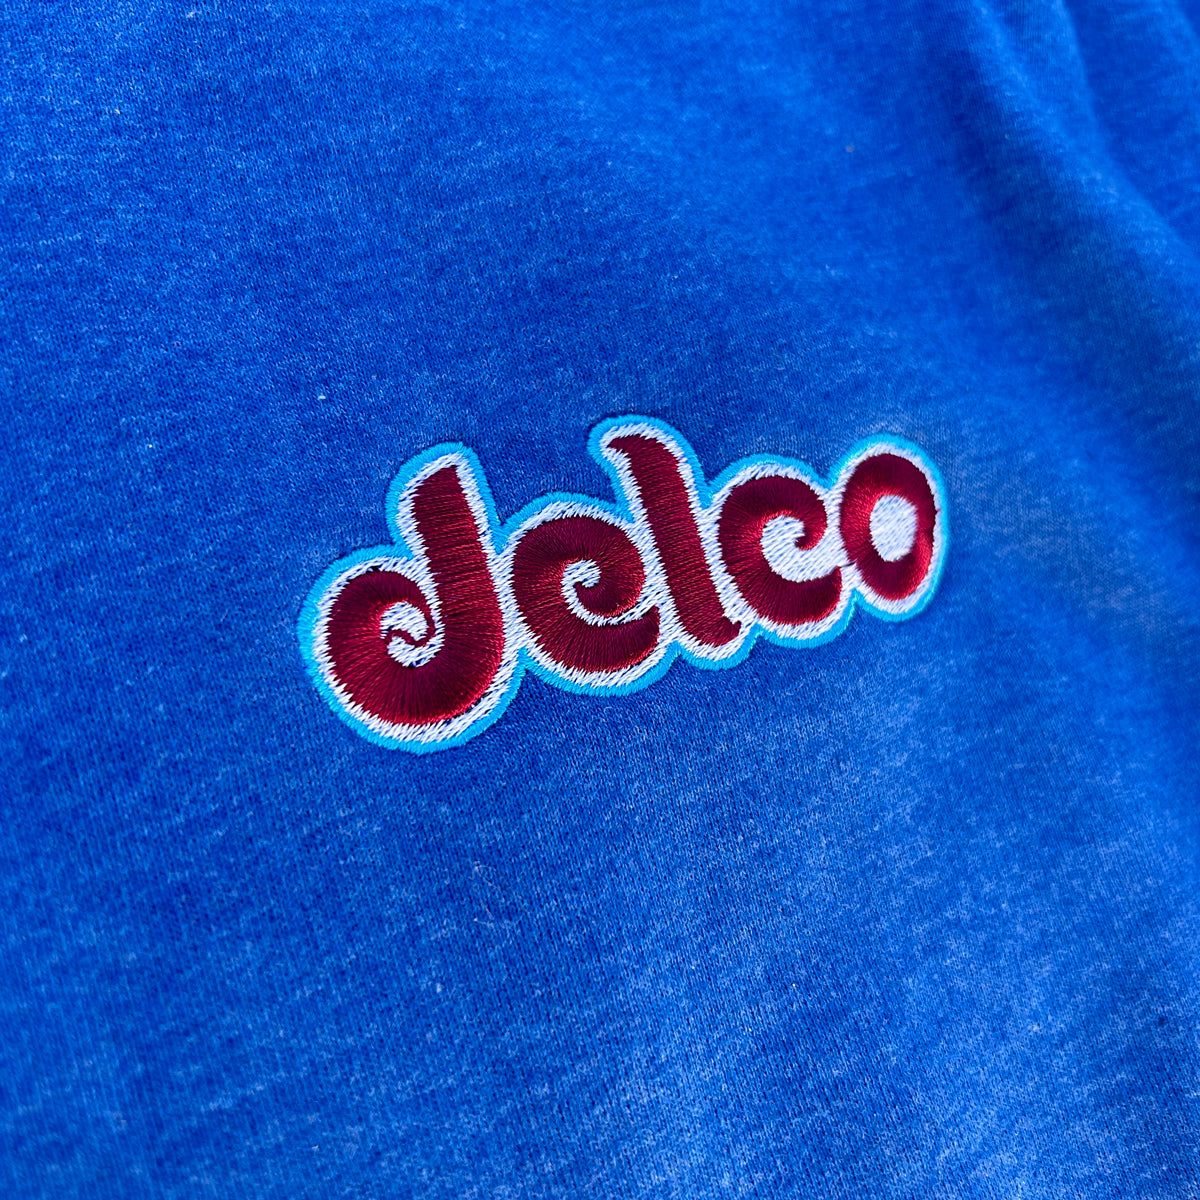 DELCO Phils Script Blue Crewneck Sweatshirt